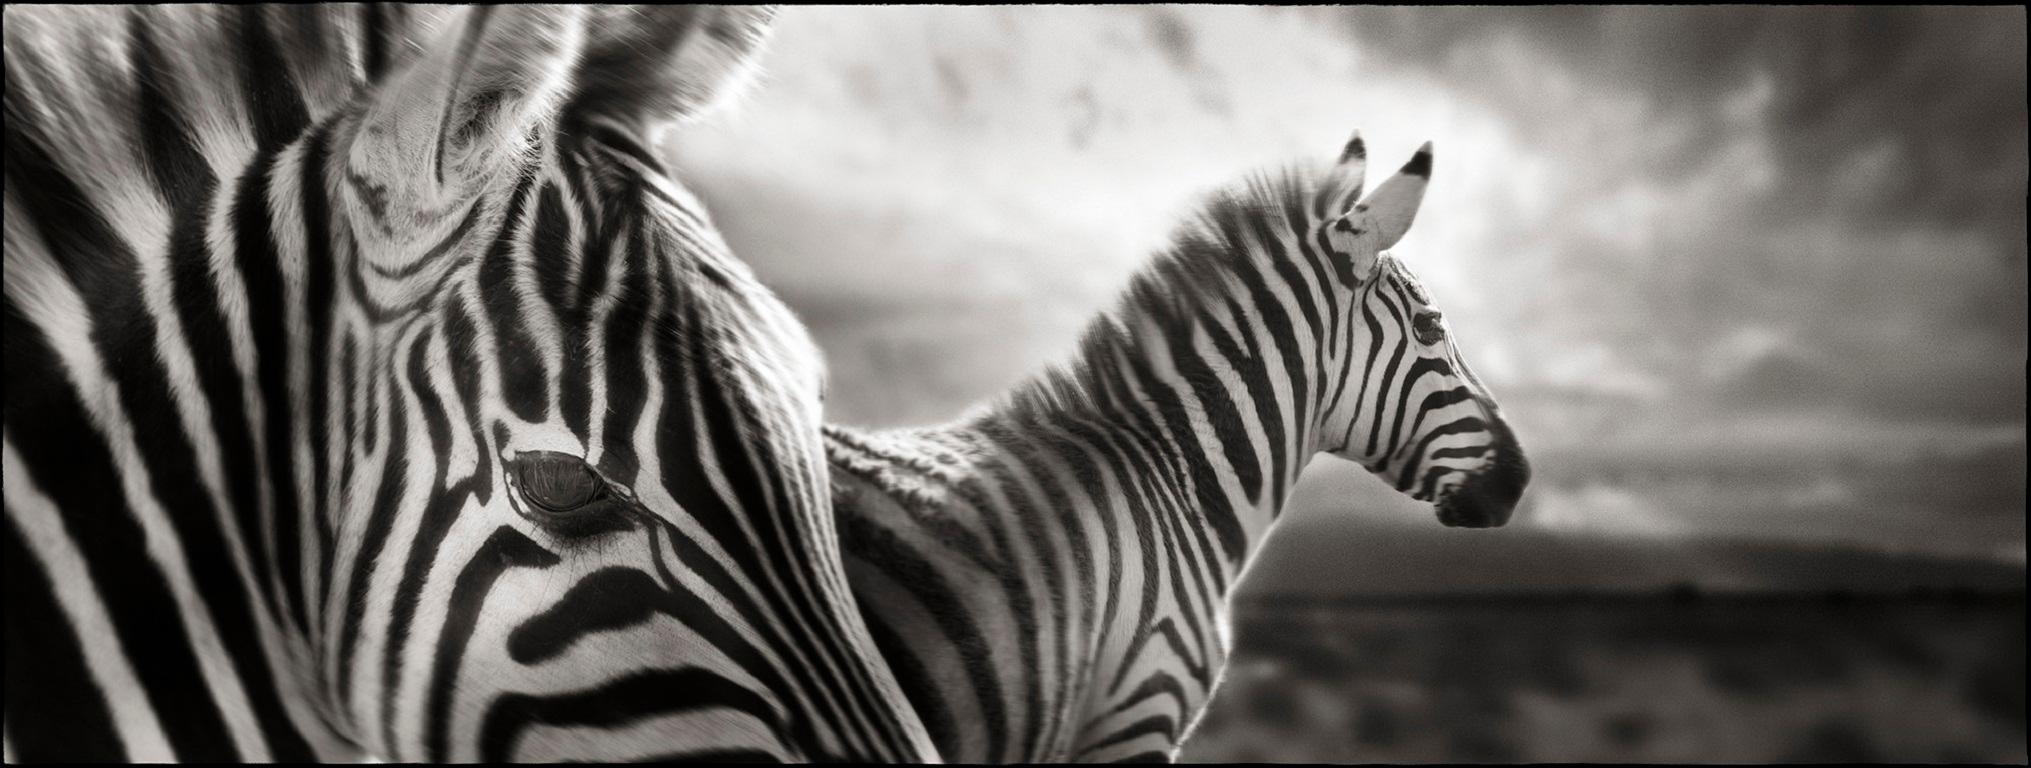 Joachim Schmeisser Still-Life Photograph – Zebra Duo – Nahaufnahme von Kunstfotografie von zwei Zebras in Landschaft, Tierwelt